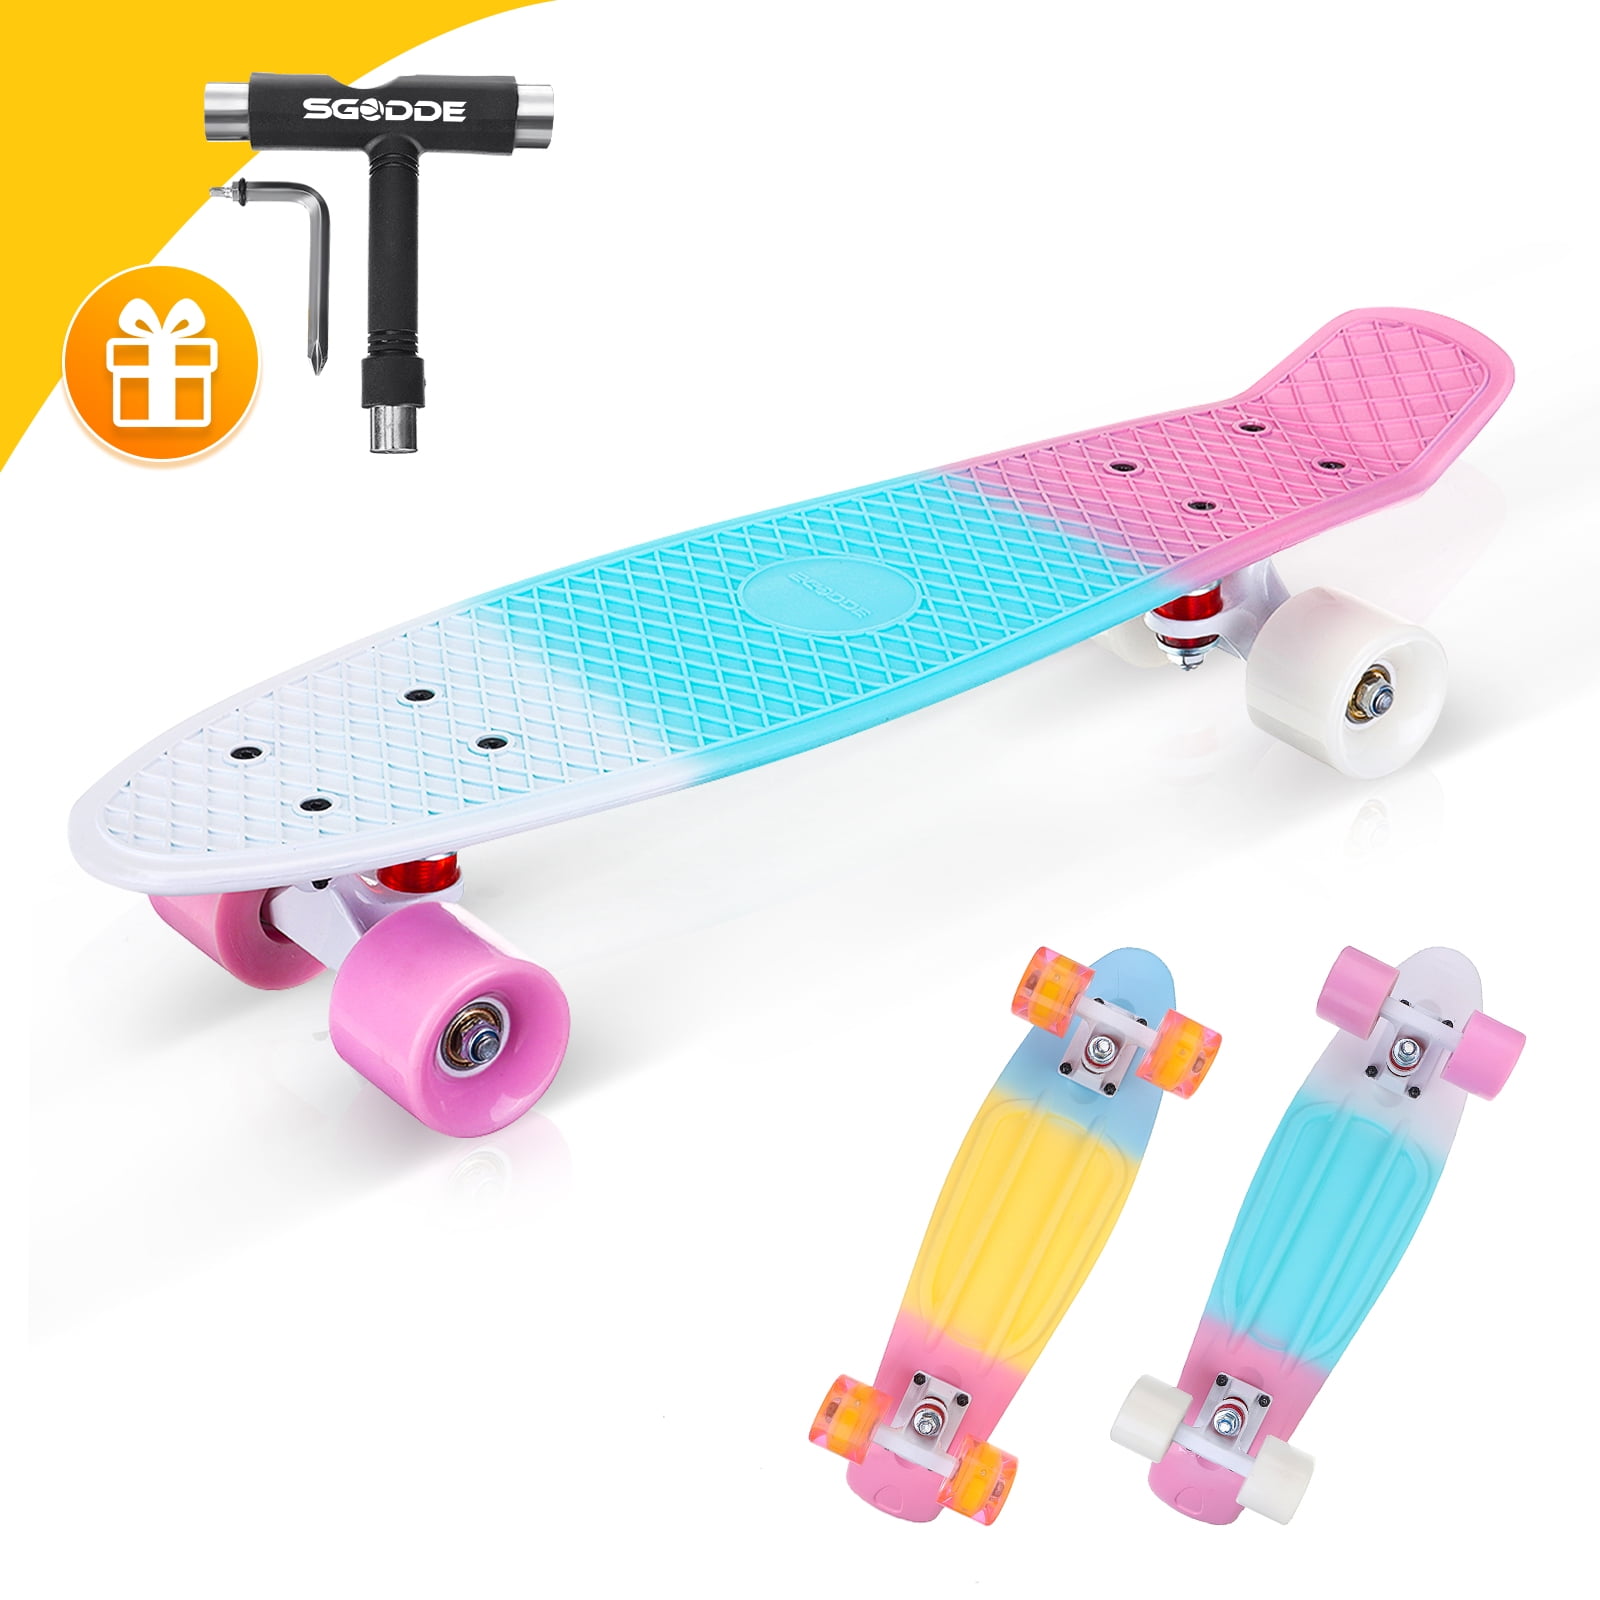 Skateboard for Kids Ages 6-12, SGODDE  Longboard Skateboards, 22" Mini Cruiser Skateboards with LED Wheels for Beginners Girls Boys Teens